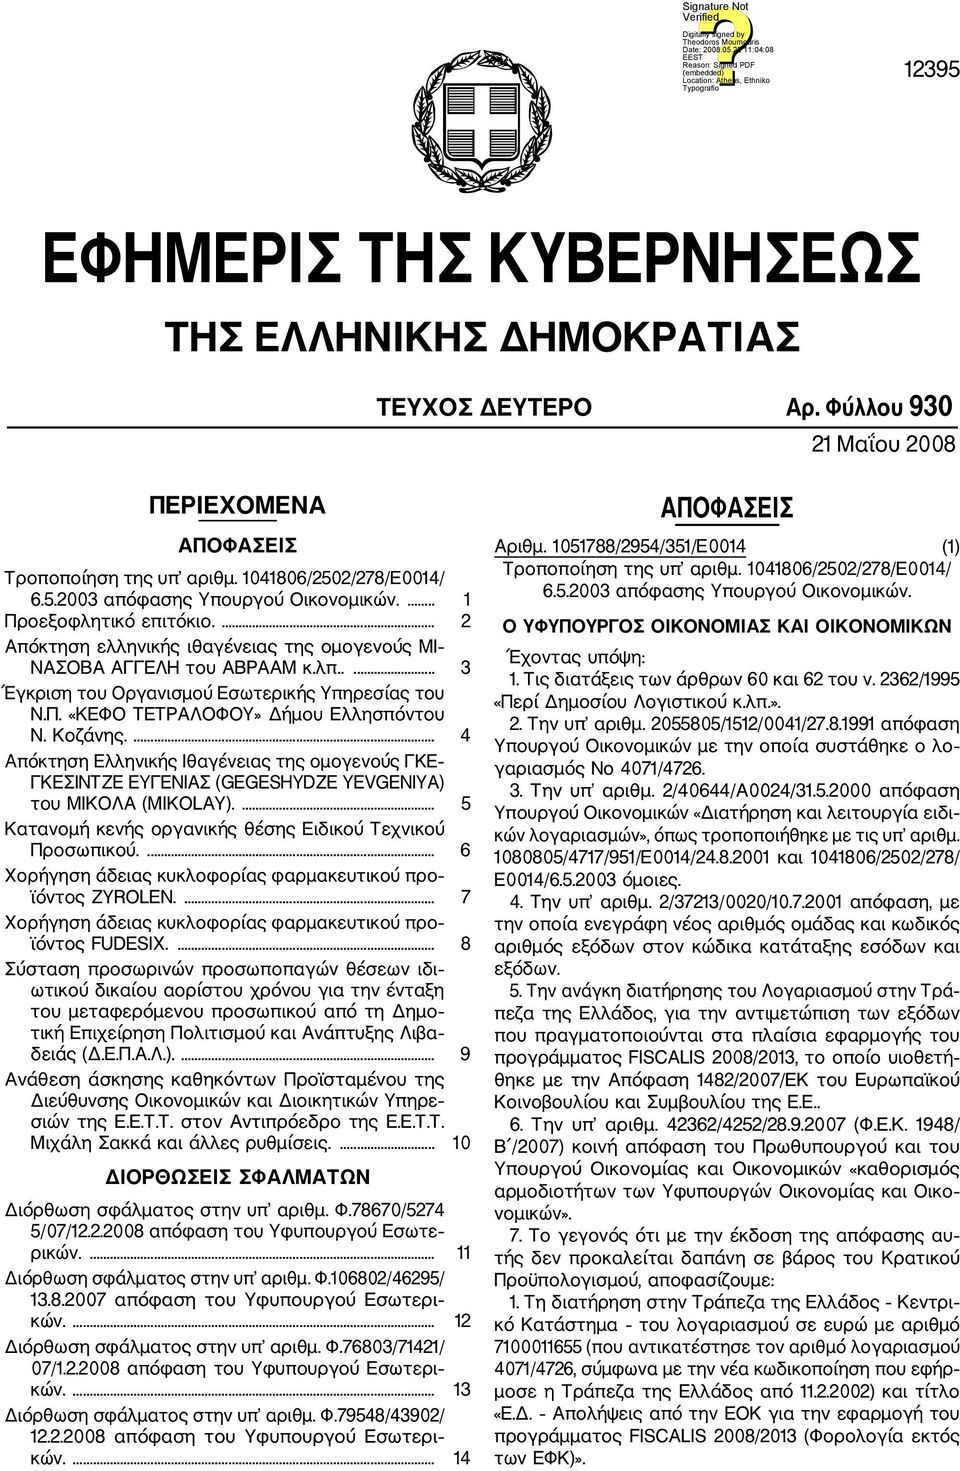 Κοζάνης.... 4 Απόκτηση Ελληνικής Ιθαγένειας της ομογενούς ΓΚΕ ΓΚΕΣΙΝΤΖΕ ΕΥΓΕΝΙΑΣ (GEGESHYDZE YEVGENIYA) του ΜΙΚΟΛΑ (MIKOLAY).... 5 Κατανομή κενής οργανικής θέσης Ειδικού Τεχνικού Προσωπικού.